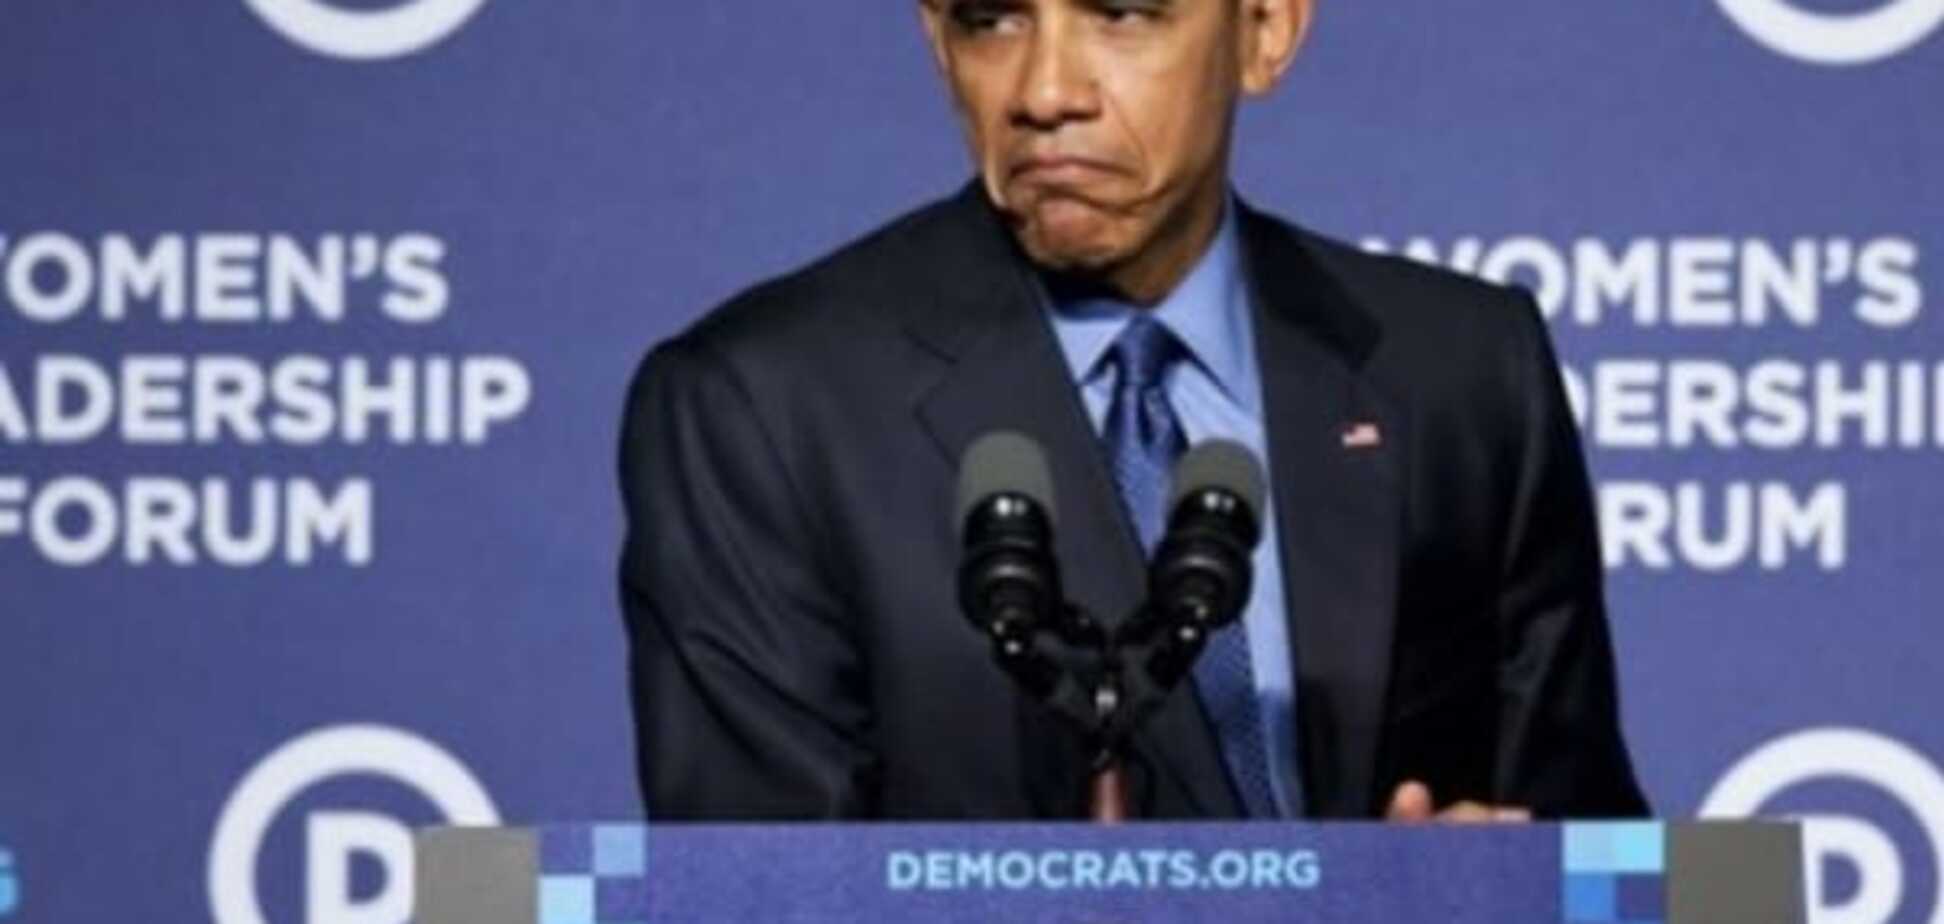 Обама покривлявся на своїх опонентів, зобразивши Сердитого котика: опубліковані фото і відео